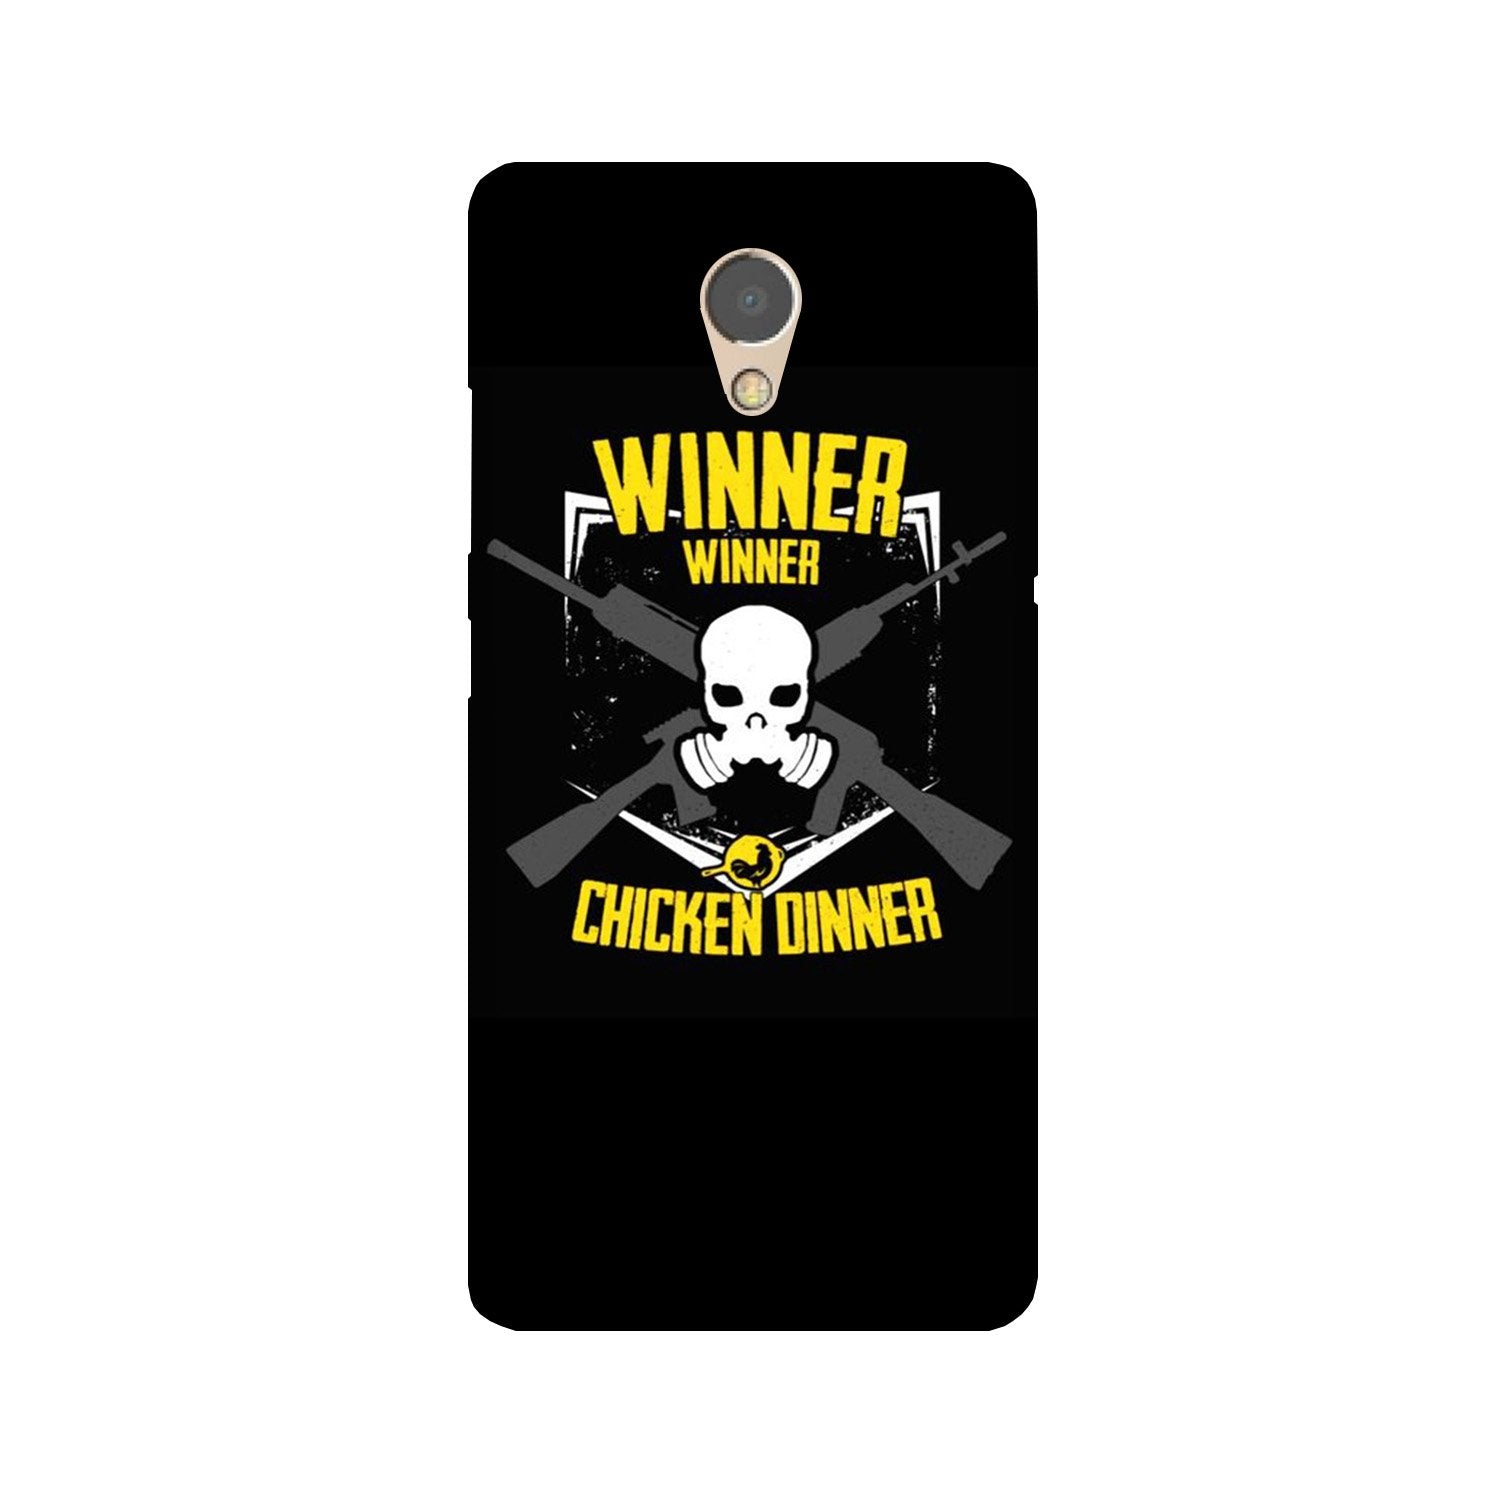 Winner Winner Chicken Dinner Case for Lenovo P2(Design - 178)